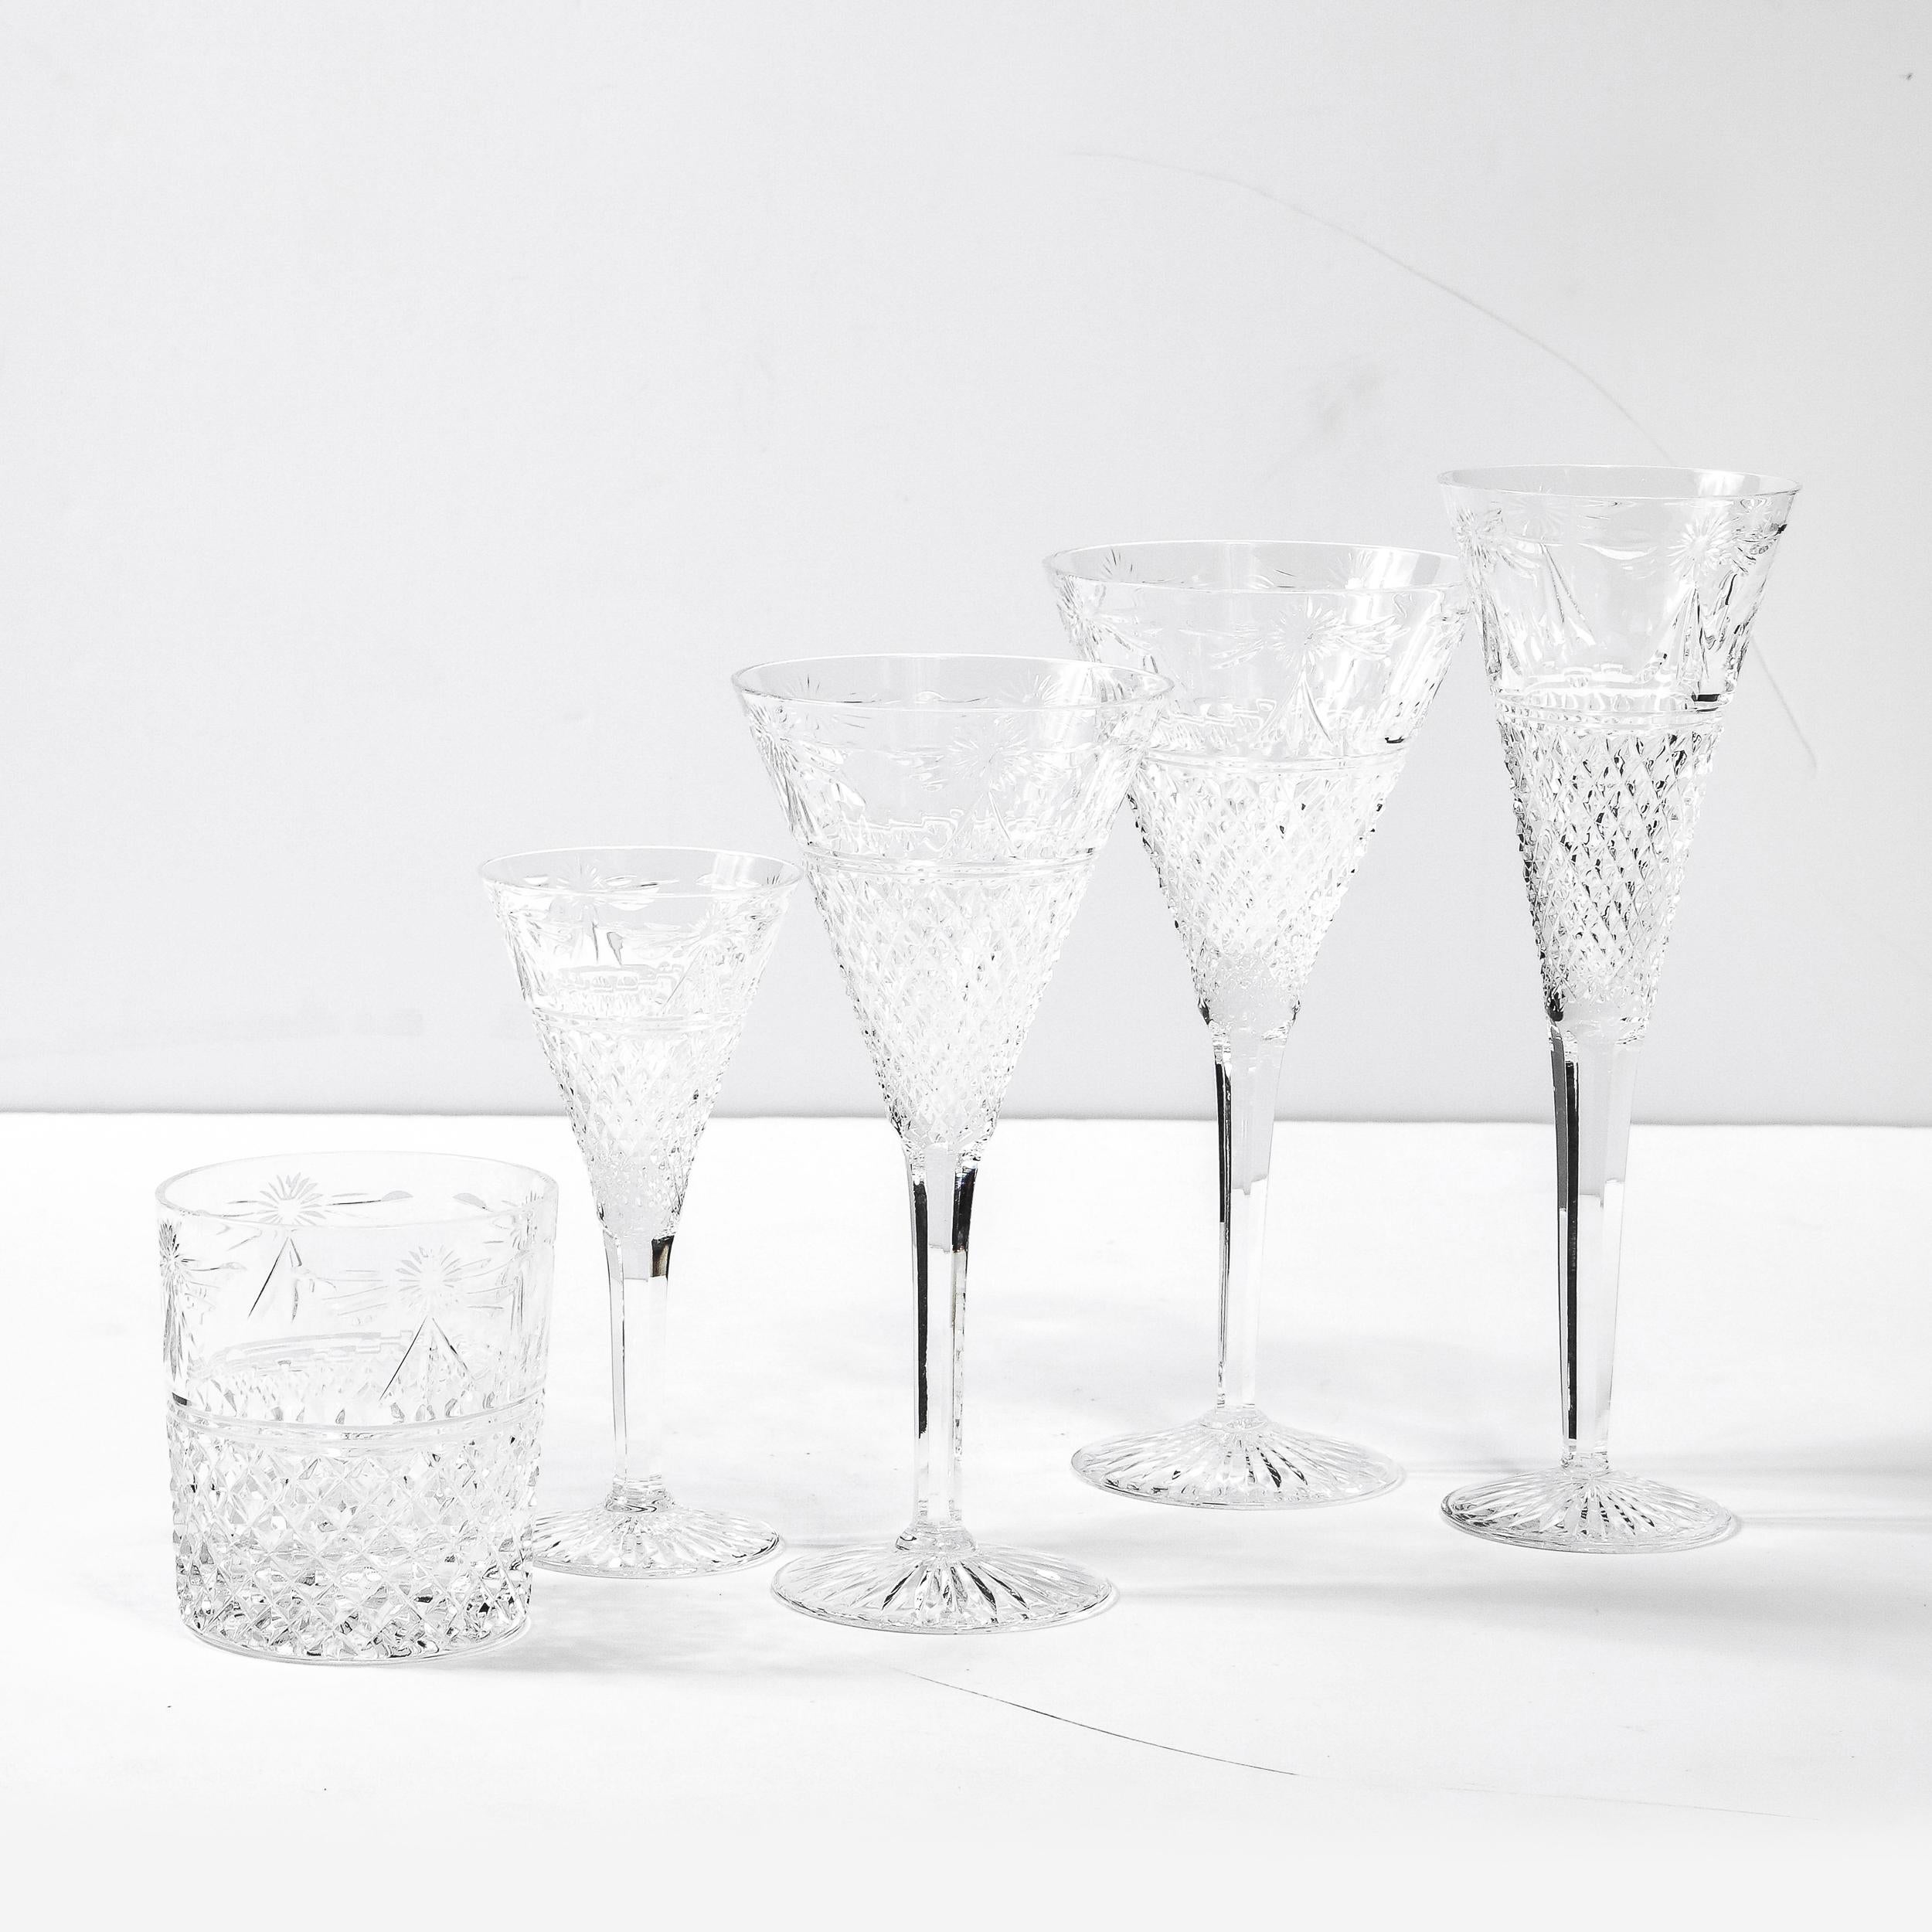 Dieses atemberaubende Set von 60 Gläsern wurde vom renommierten britischen Hersteller Stuart in der zweiten Hälfte des 20. Jahrhunderts in England hergestellt. Das Set besteht aus 12 Gläsern: Wasser-, Sekt-, Wein-, Cocktail- und Lowball-Gläser.